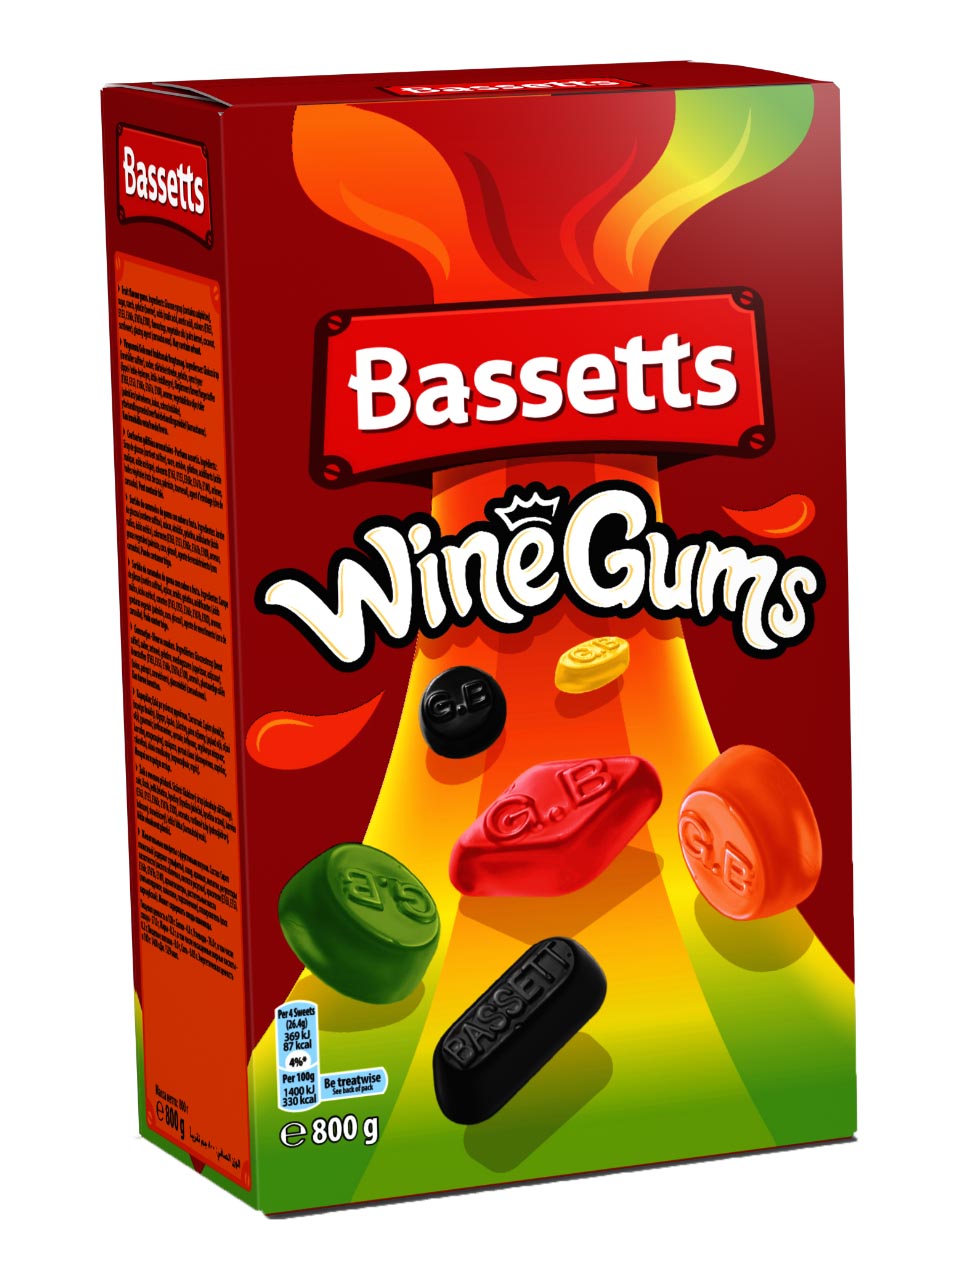 Bassett's Winegums 800g
Fruit-flavoured gums null - onesize - 1